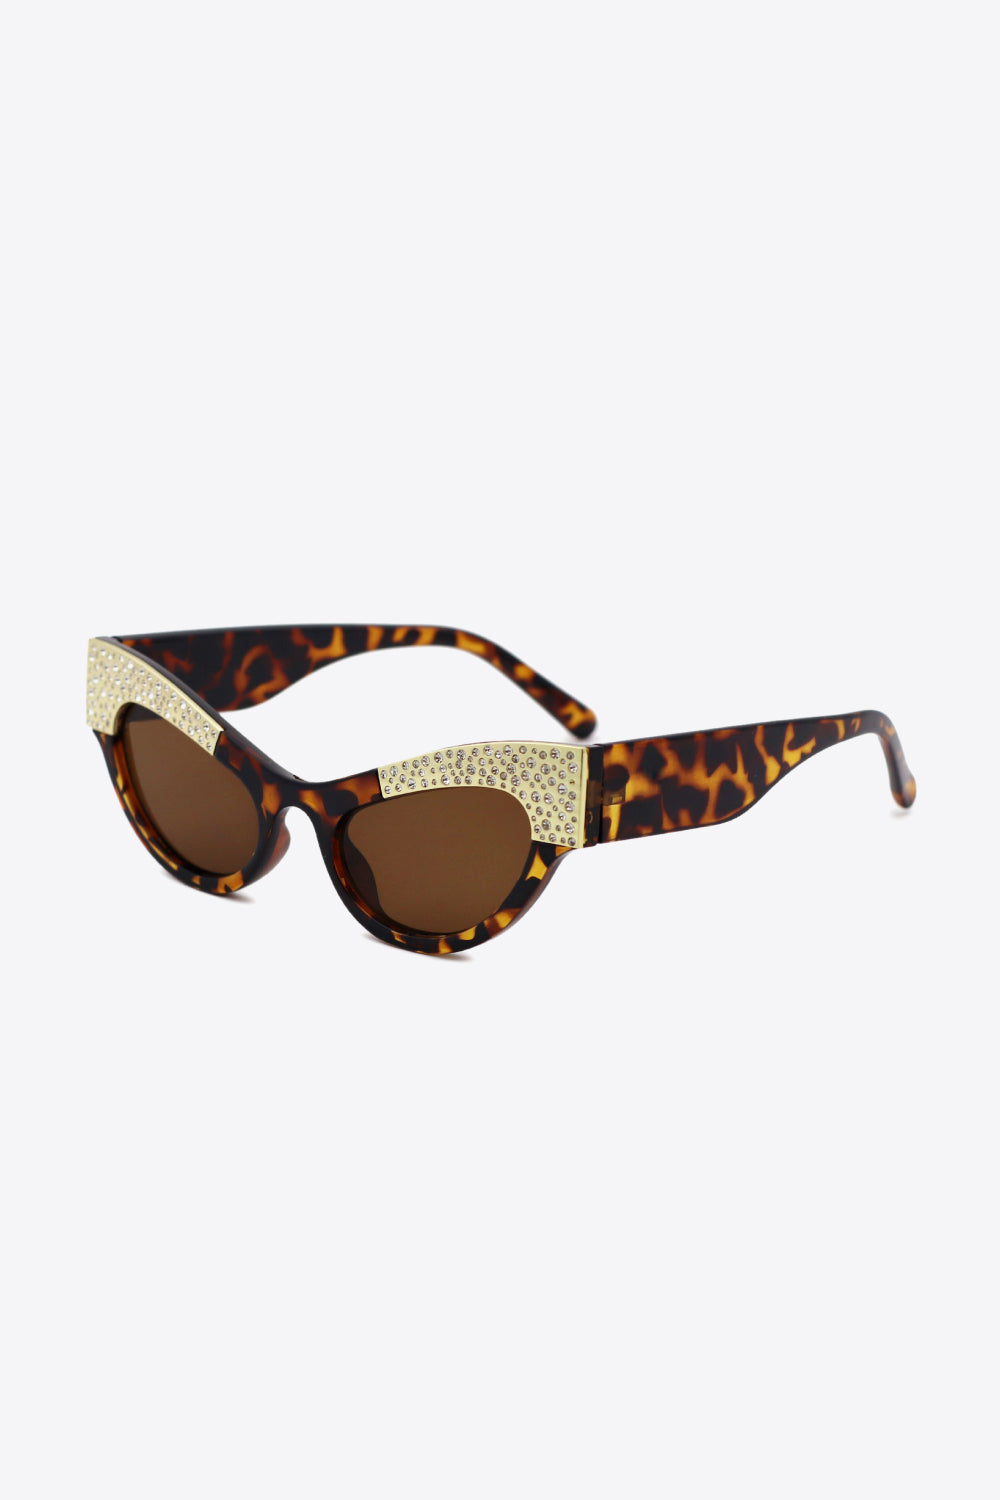 White Smoke UV400 Rhinestone Trim Cat-Eye Sunglasses Sunglasses